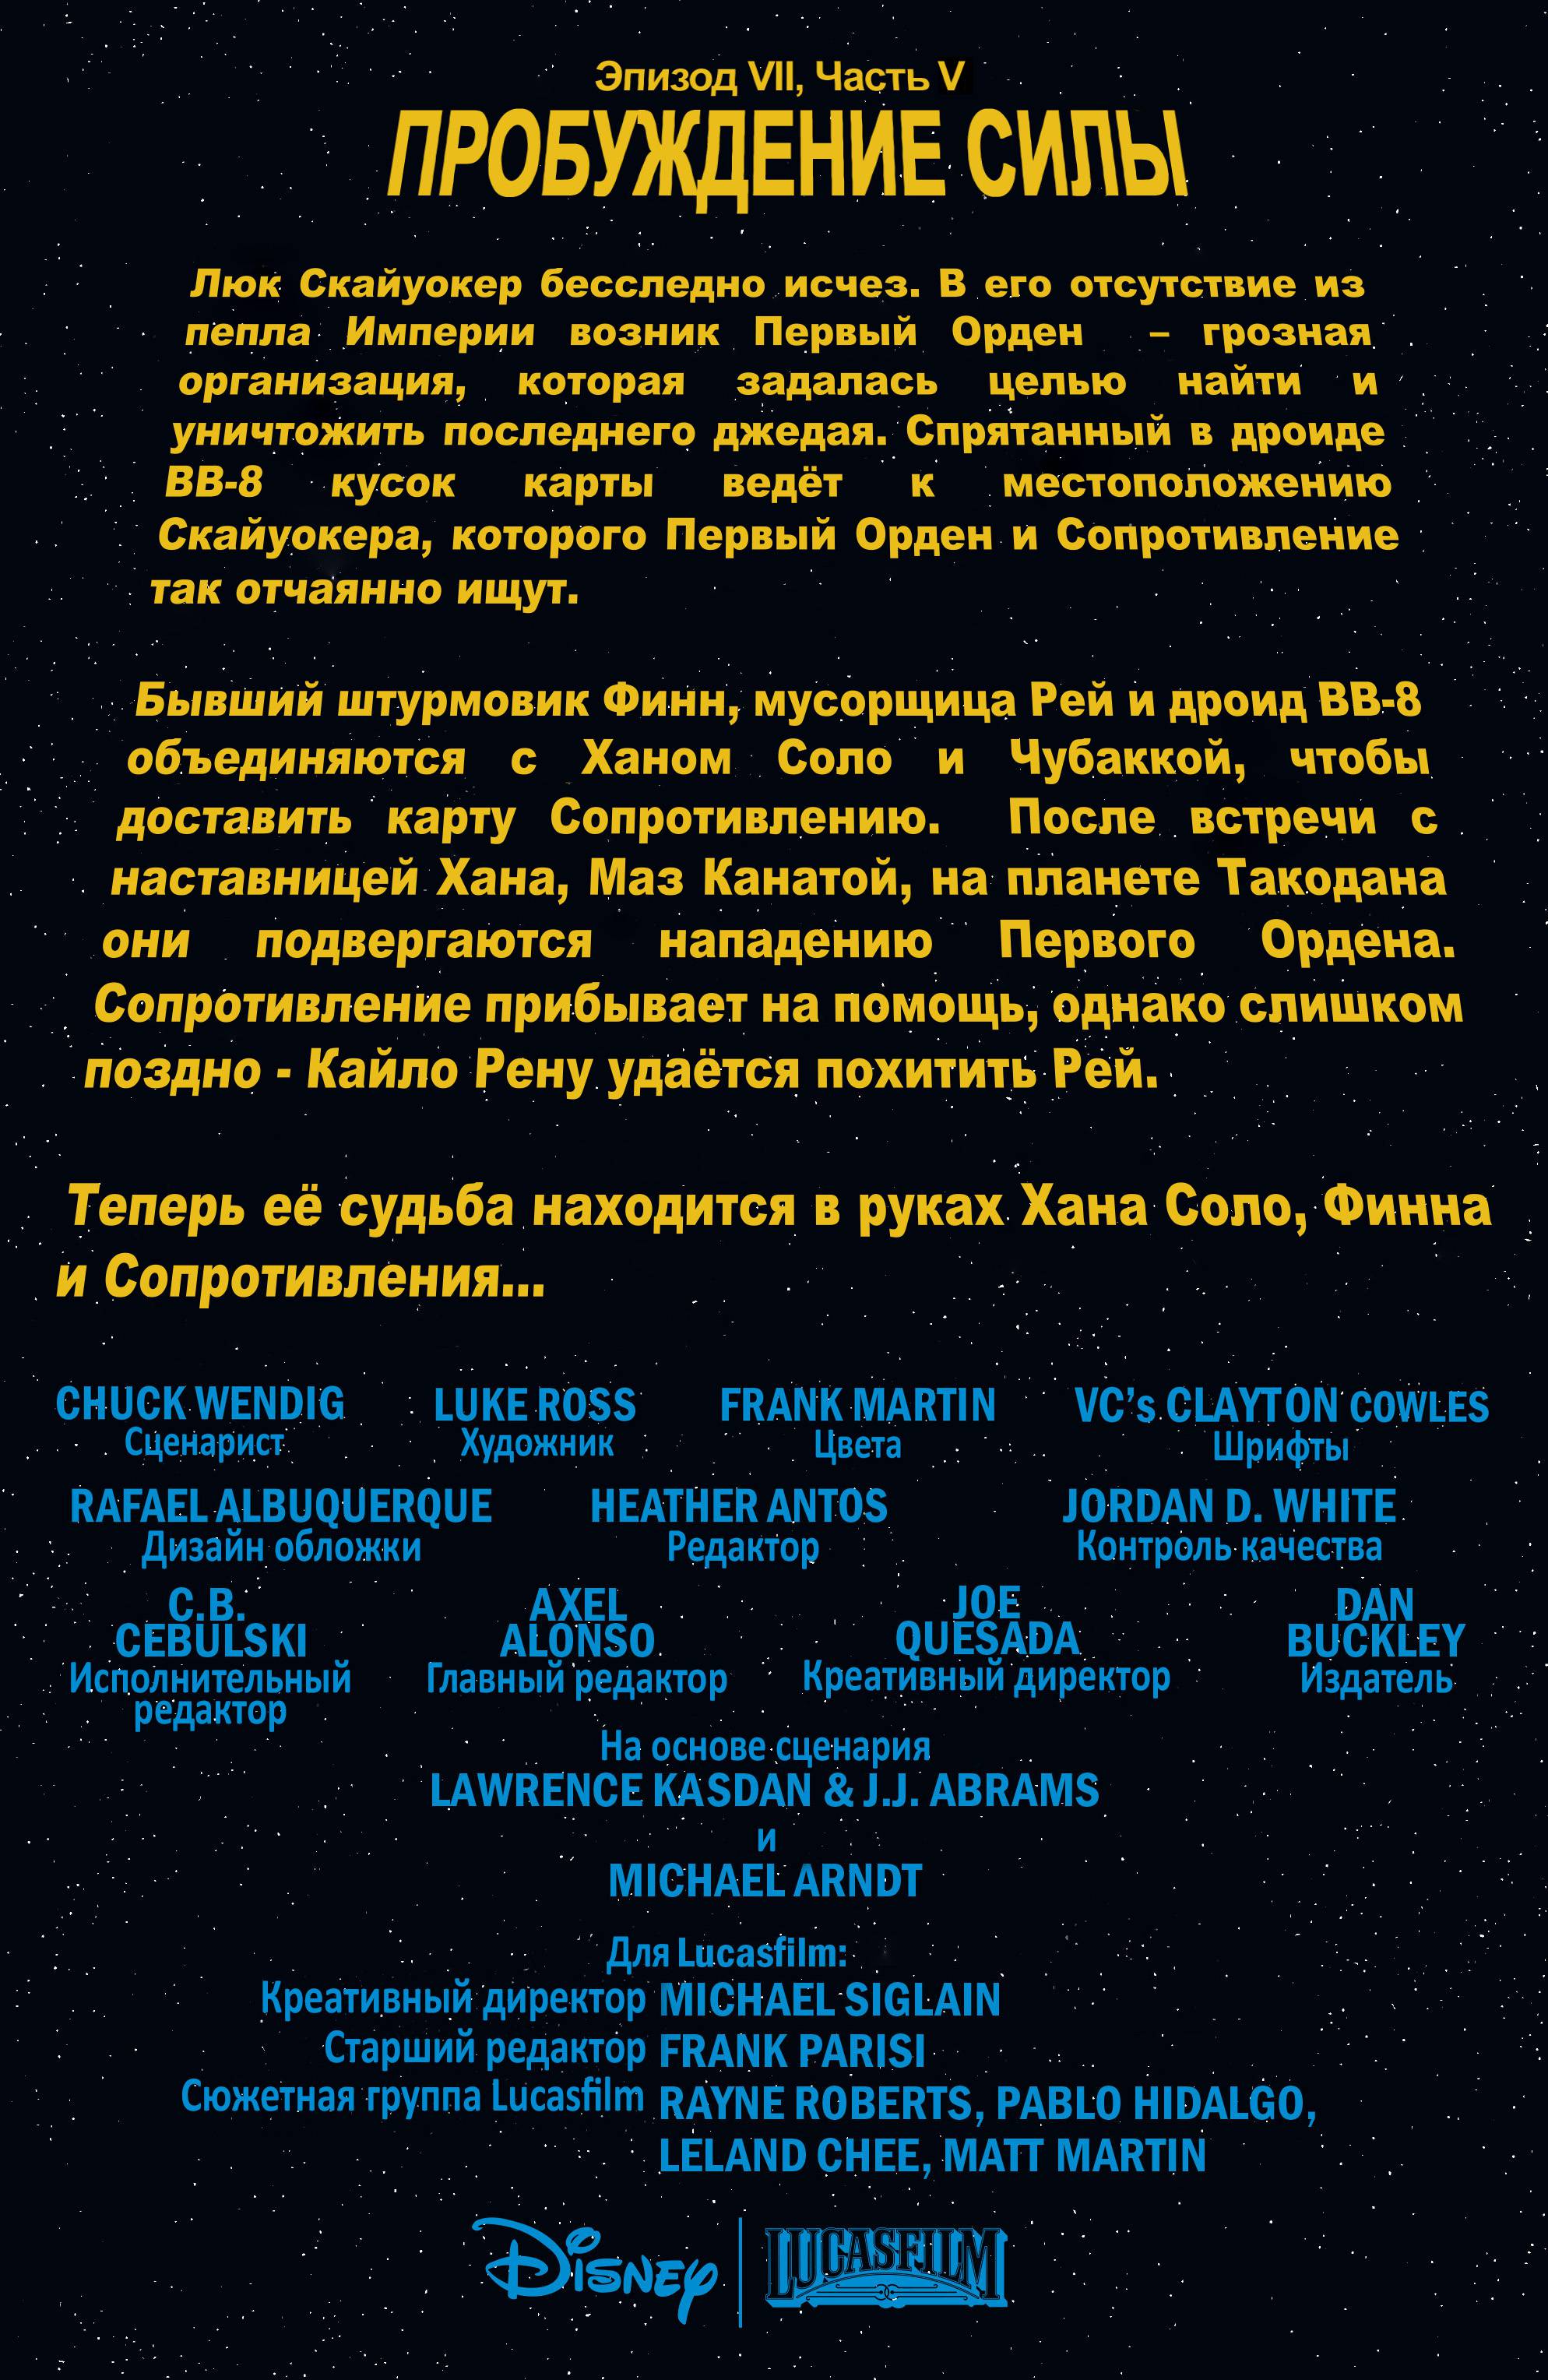 Звездные Войны: Пробуждение Силы. Адаптация Фильма №5 онлайн